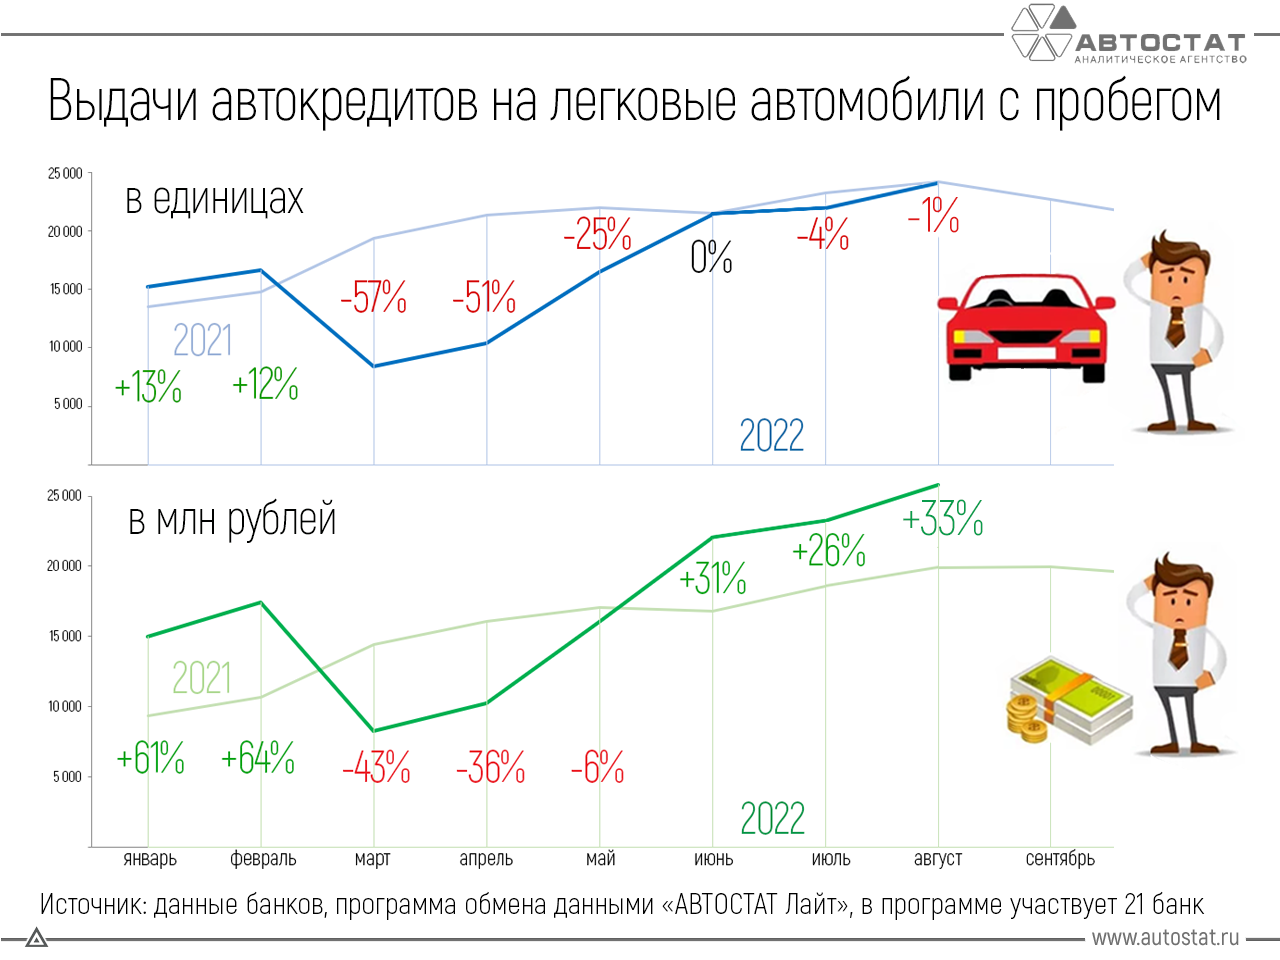 Процентные ставки на автокредит сегодня. Рынок автомобилей. Автокредит на вторичный рынок. Рынок автокредитования в России 2022. Самые востребованные автомобили на вторичном рынке России.